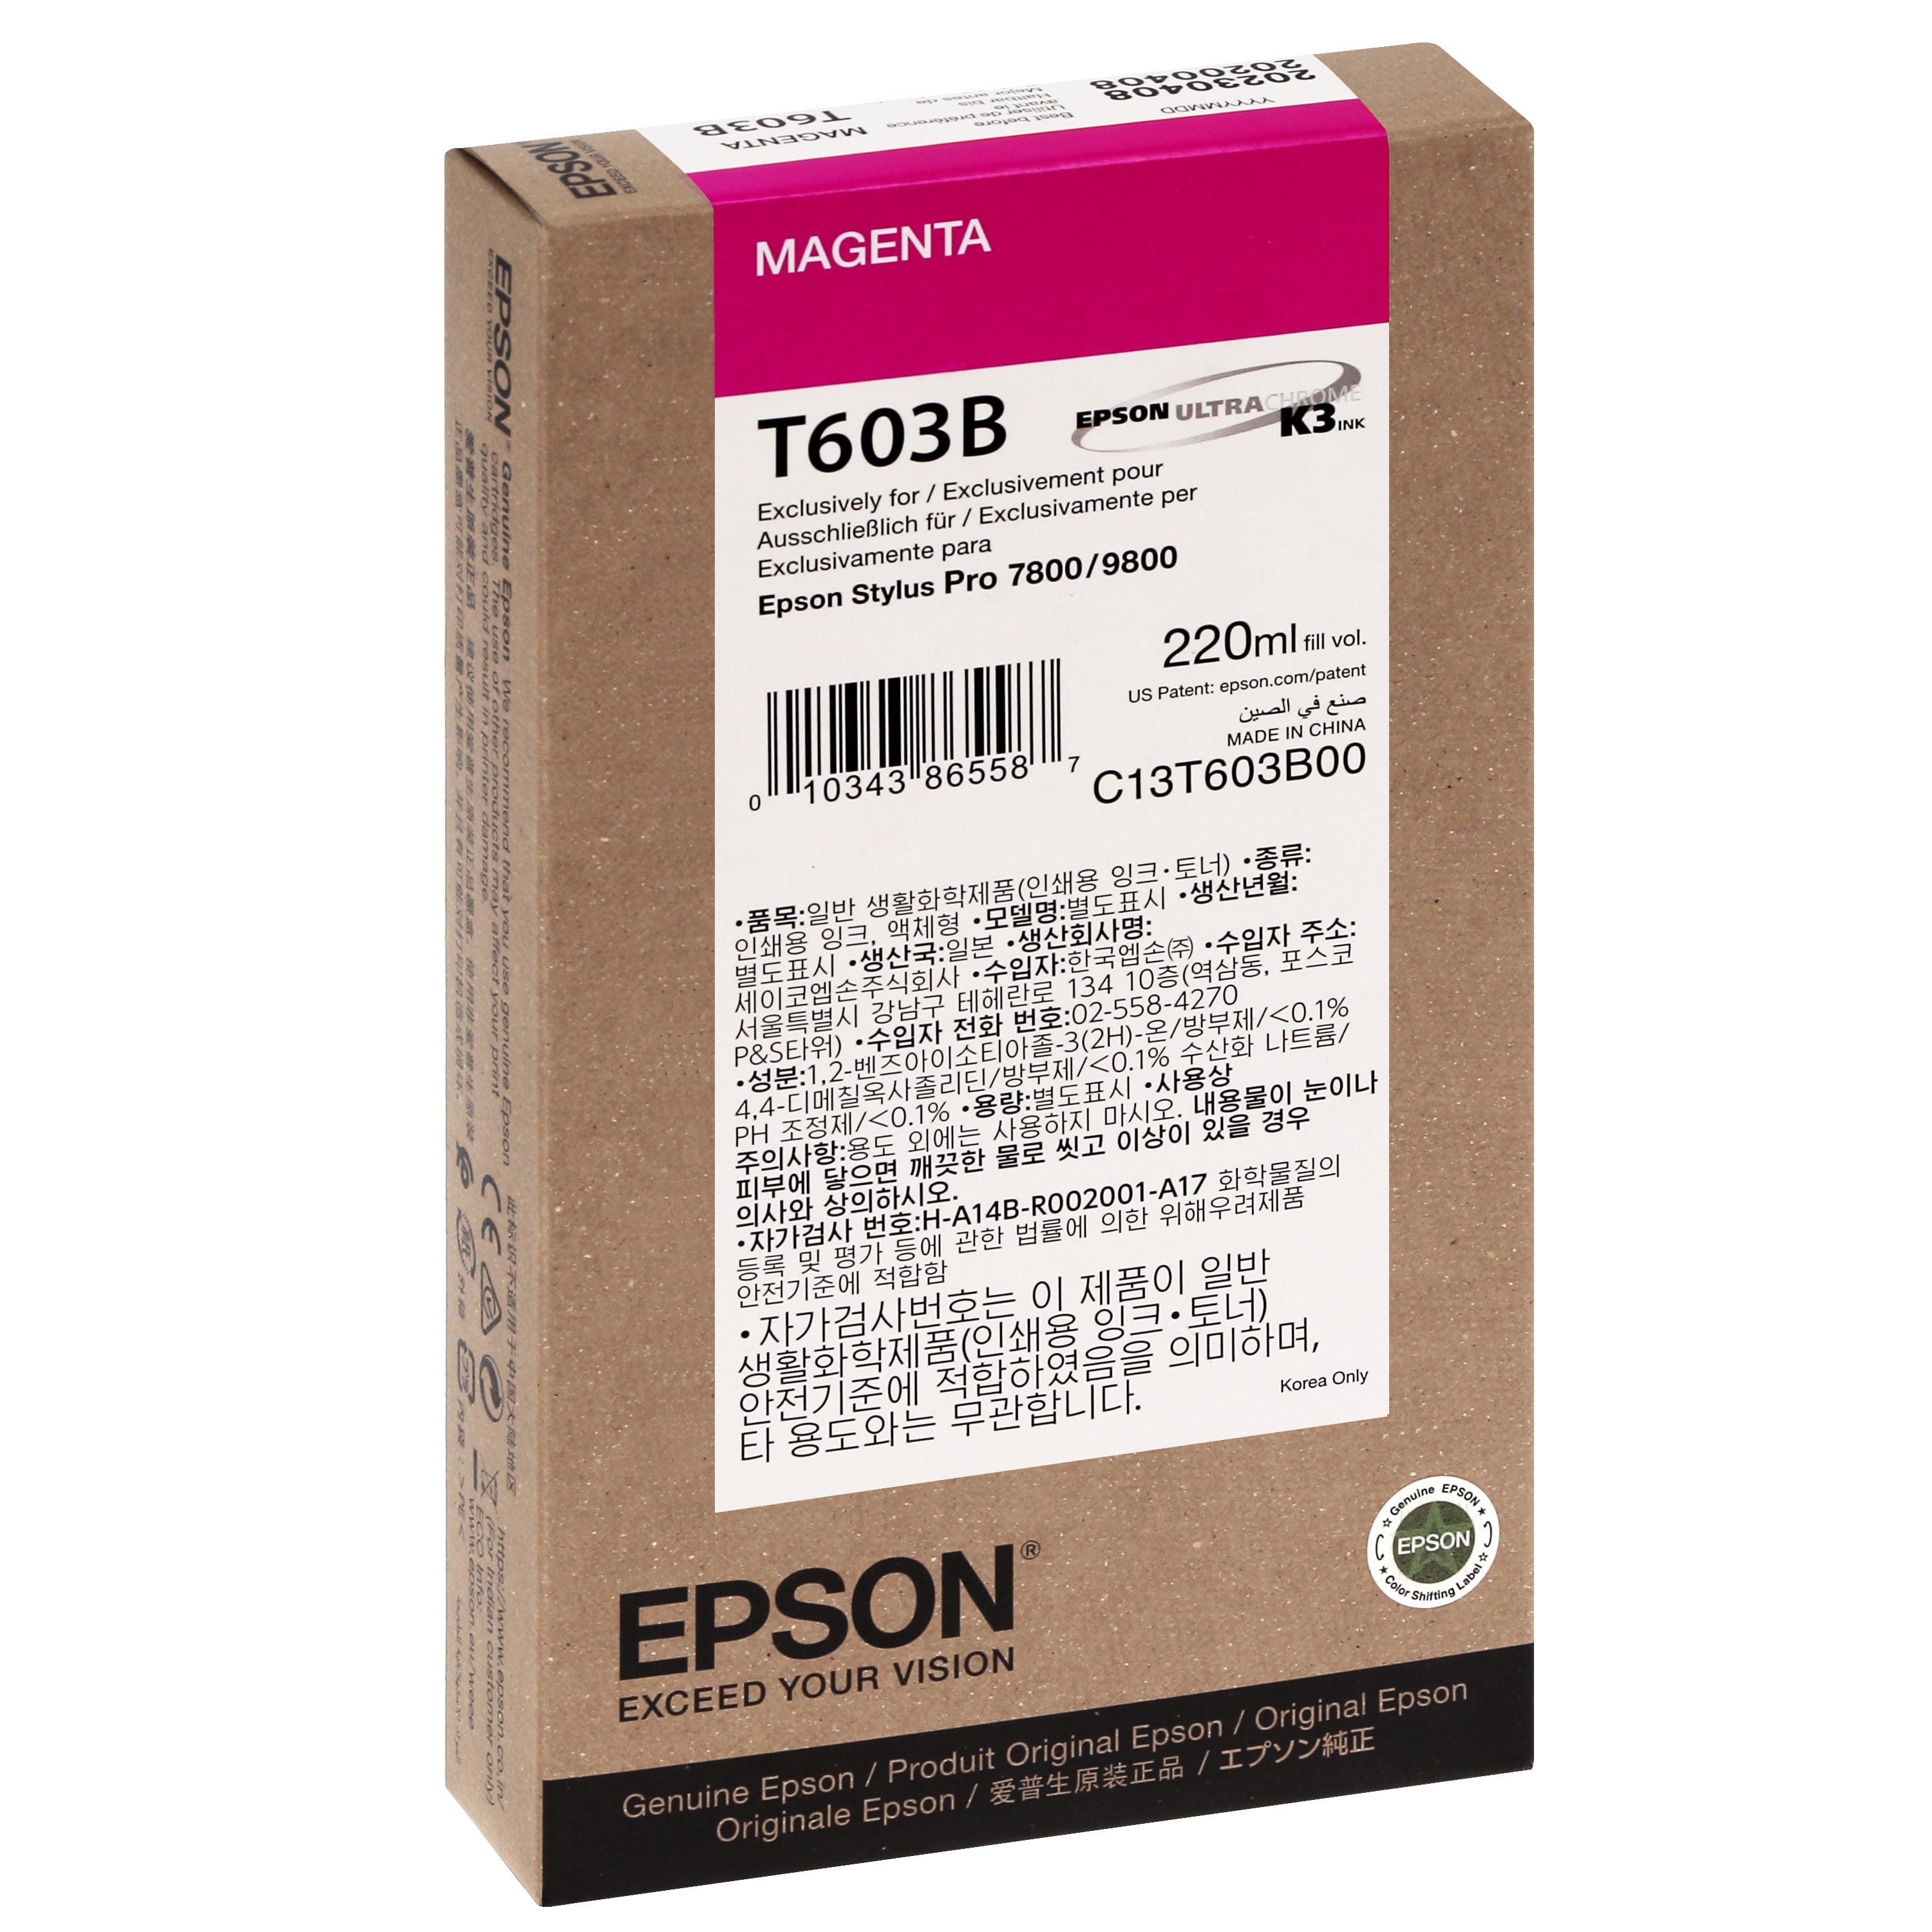 EPSON - Cartouche d'encre traceur T603B Pour imprimante 7800/9800 Magenta - 220ml